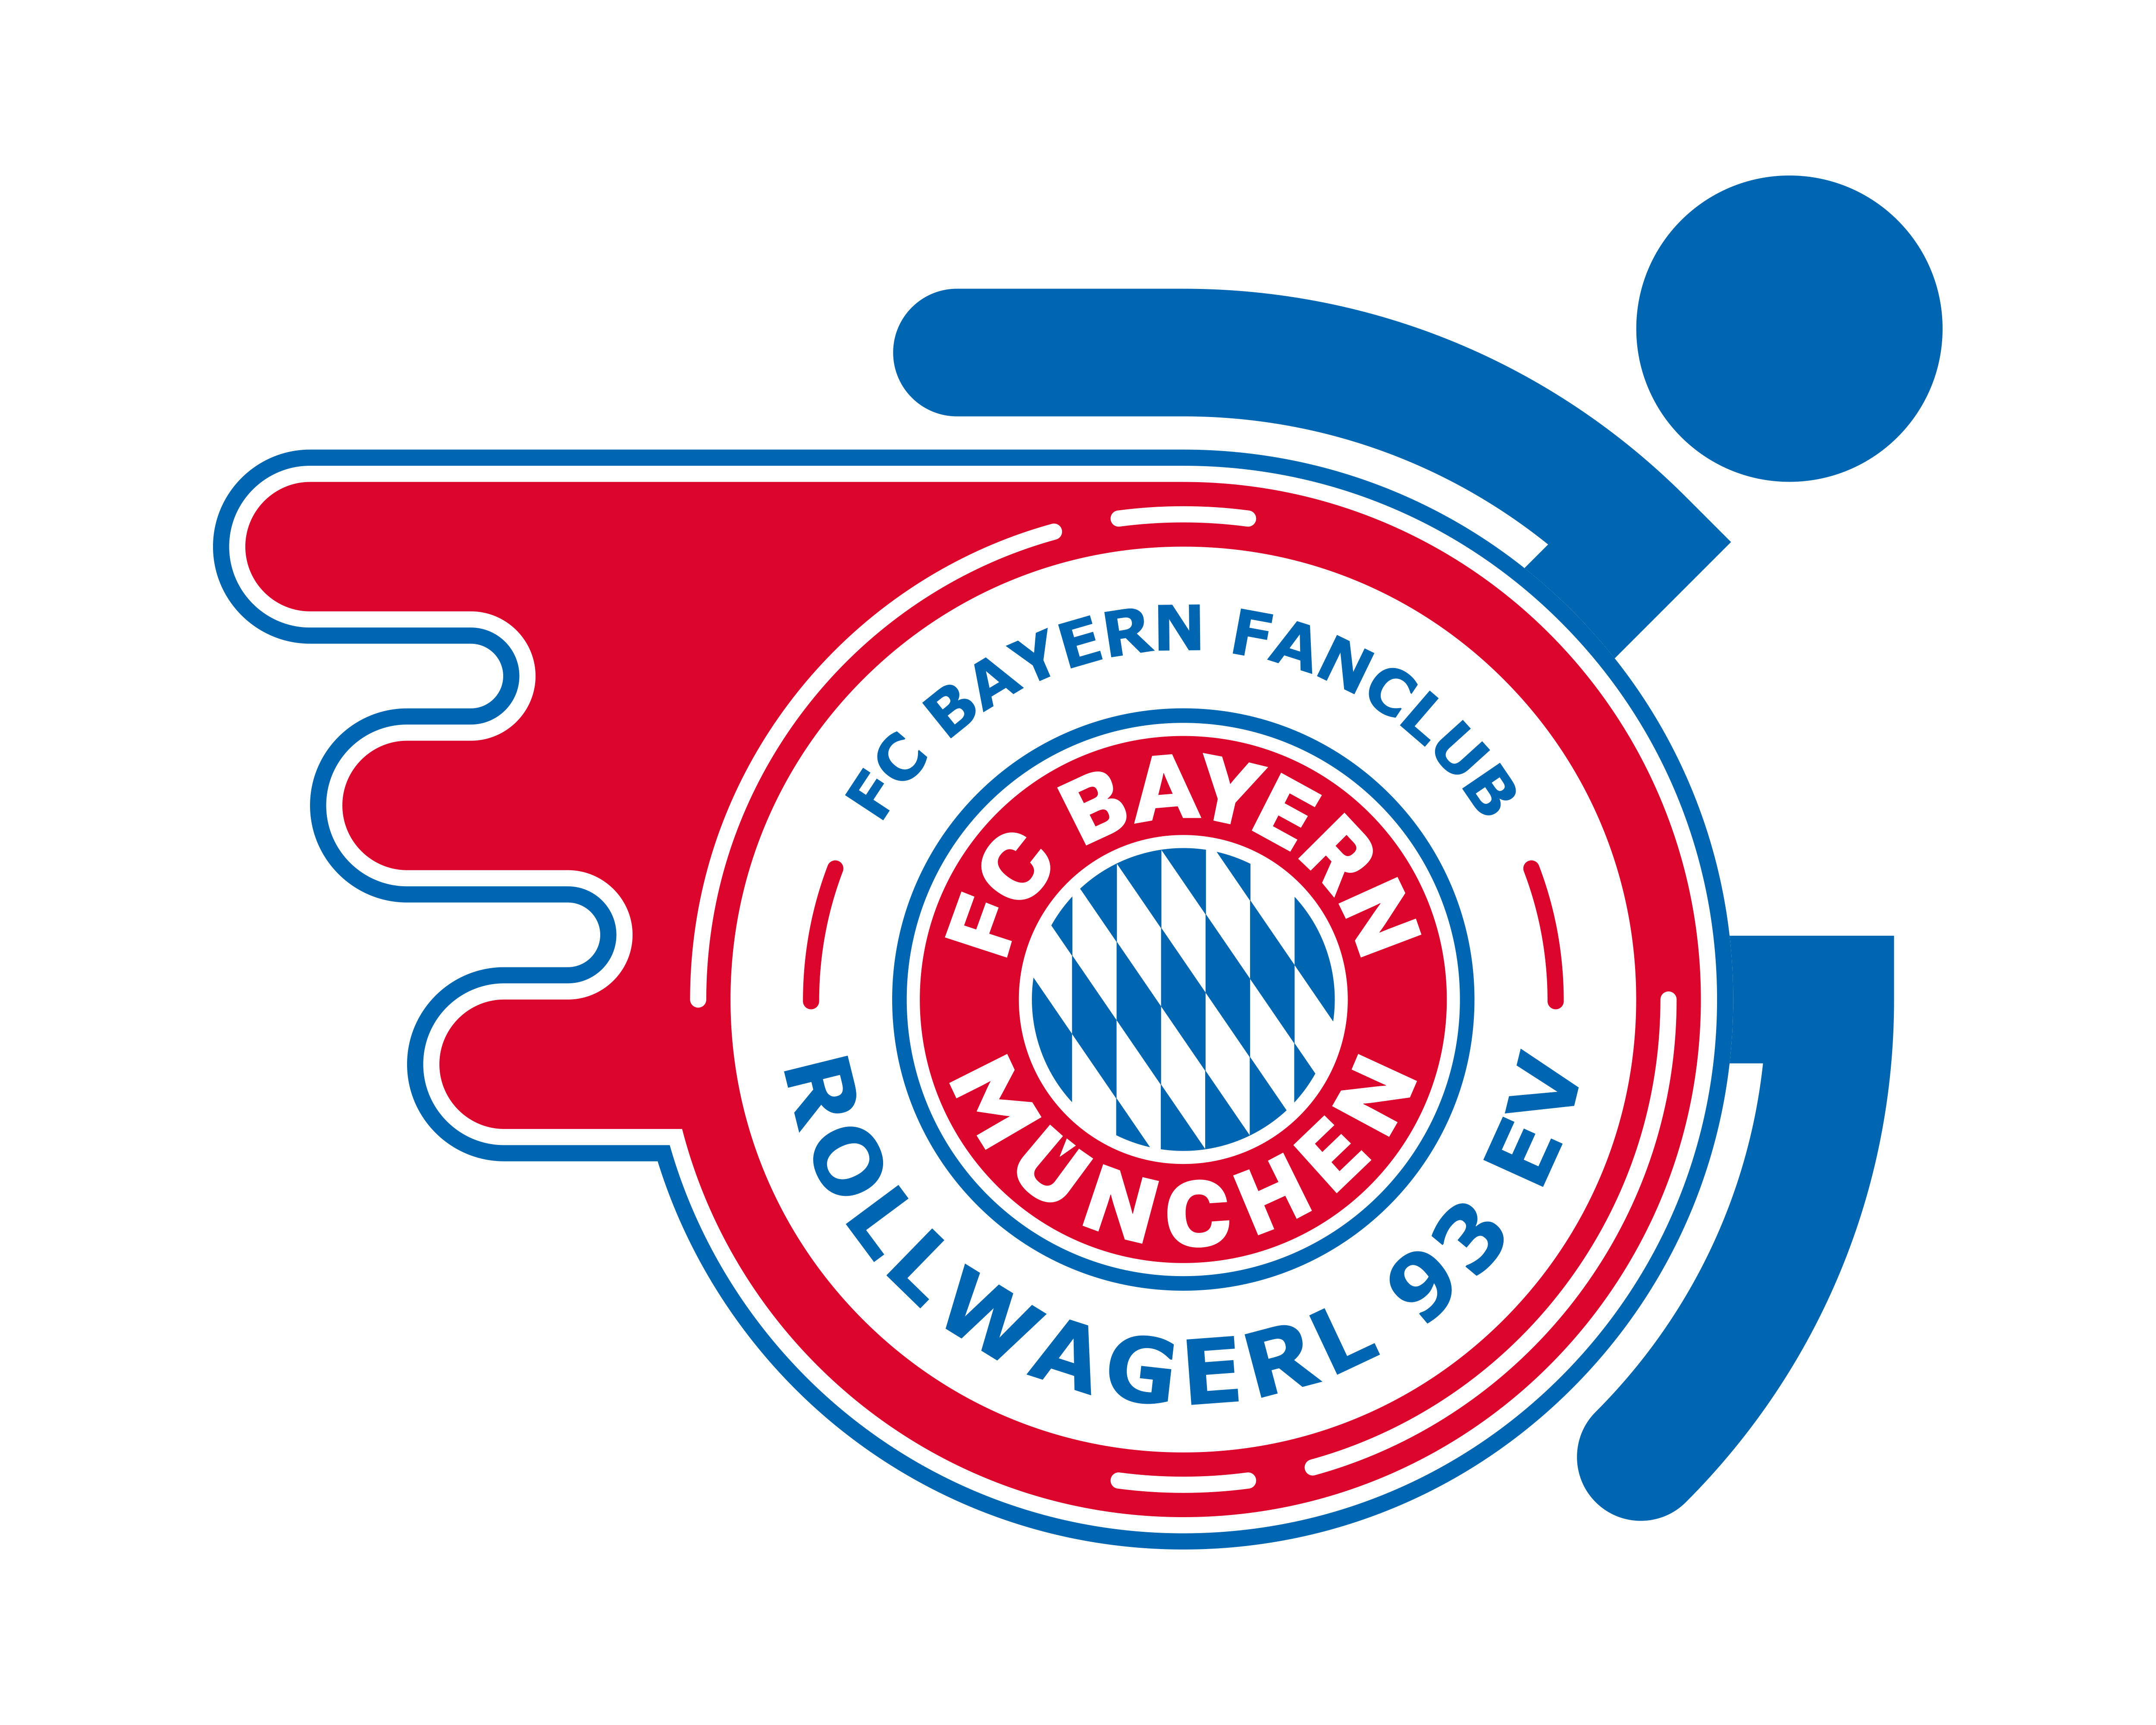 Ein Rollstuhl, der an seinem Rad das rot-weiß-blaue FC Bayern-Logo trägt. Die weiß-blauen Rauten werden von einem roten Ring umschlossen, der den Schriftzug FC Bayern München trägt.